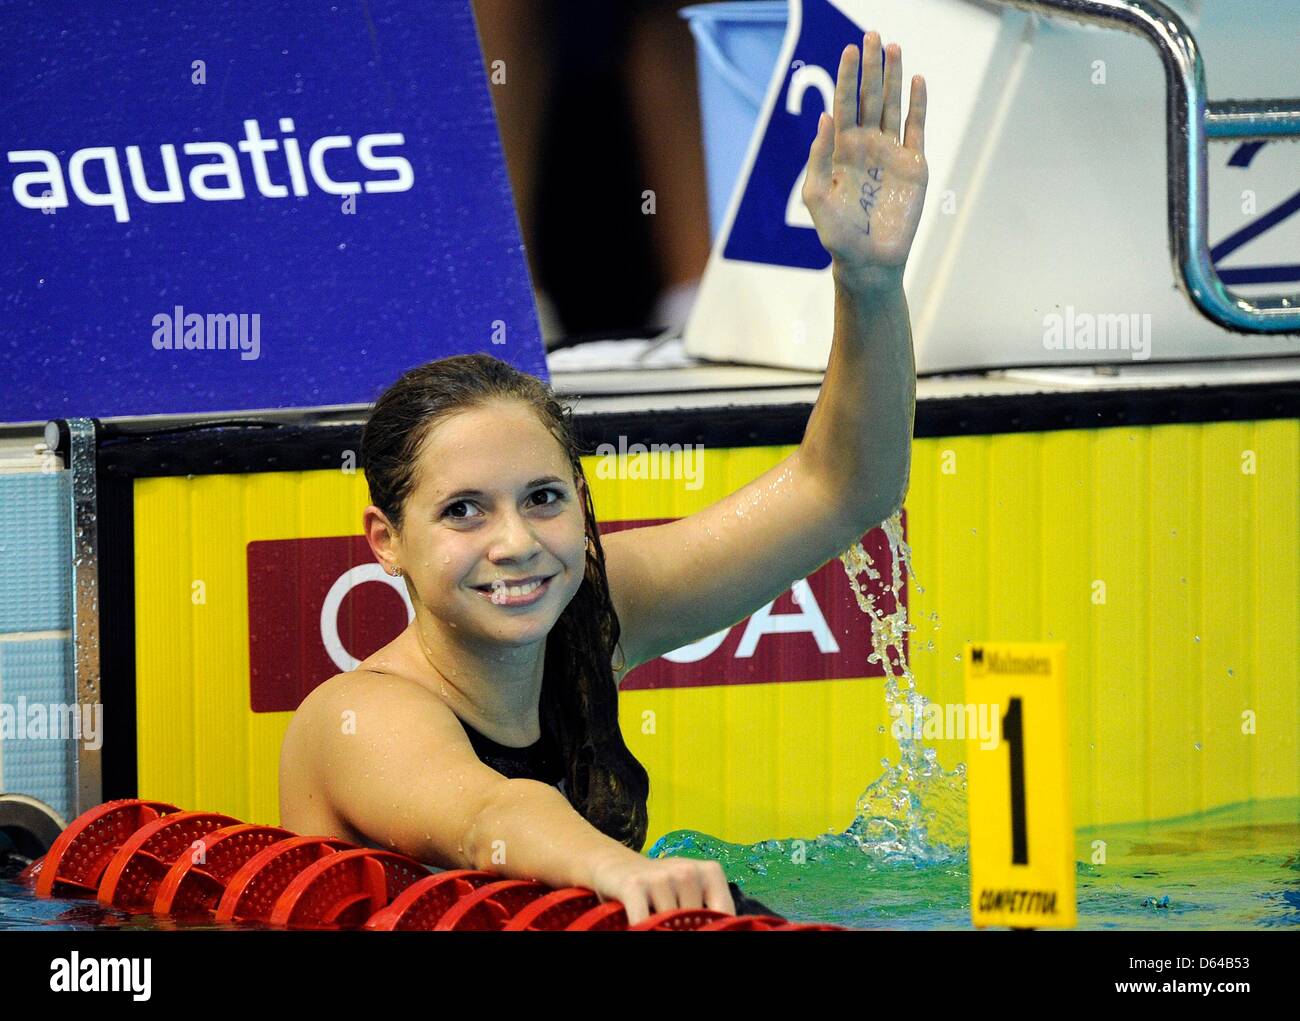 Boglarka Kapas de Hungría celebra después de ganar los 800 metros femeninos Freestyle final en el Campeonato Europeo de natación en Debrecen, Hungría, jueves 24 de mayo de 2012. Foto: Marius Becker dpa +++(c) dpa - Bildfunk+++ Foto de stock